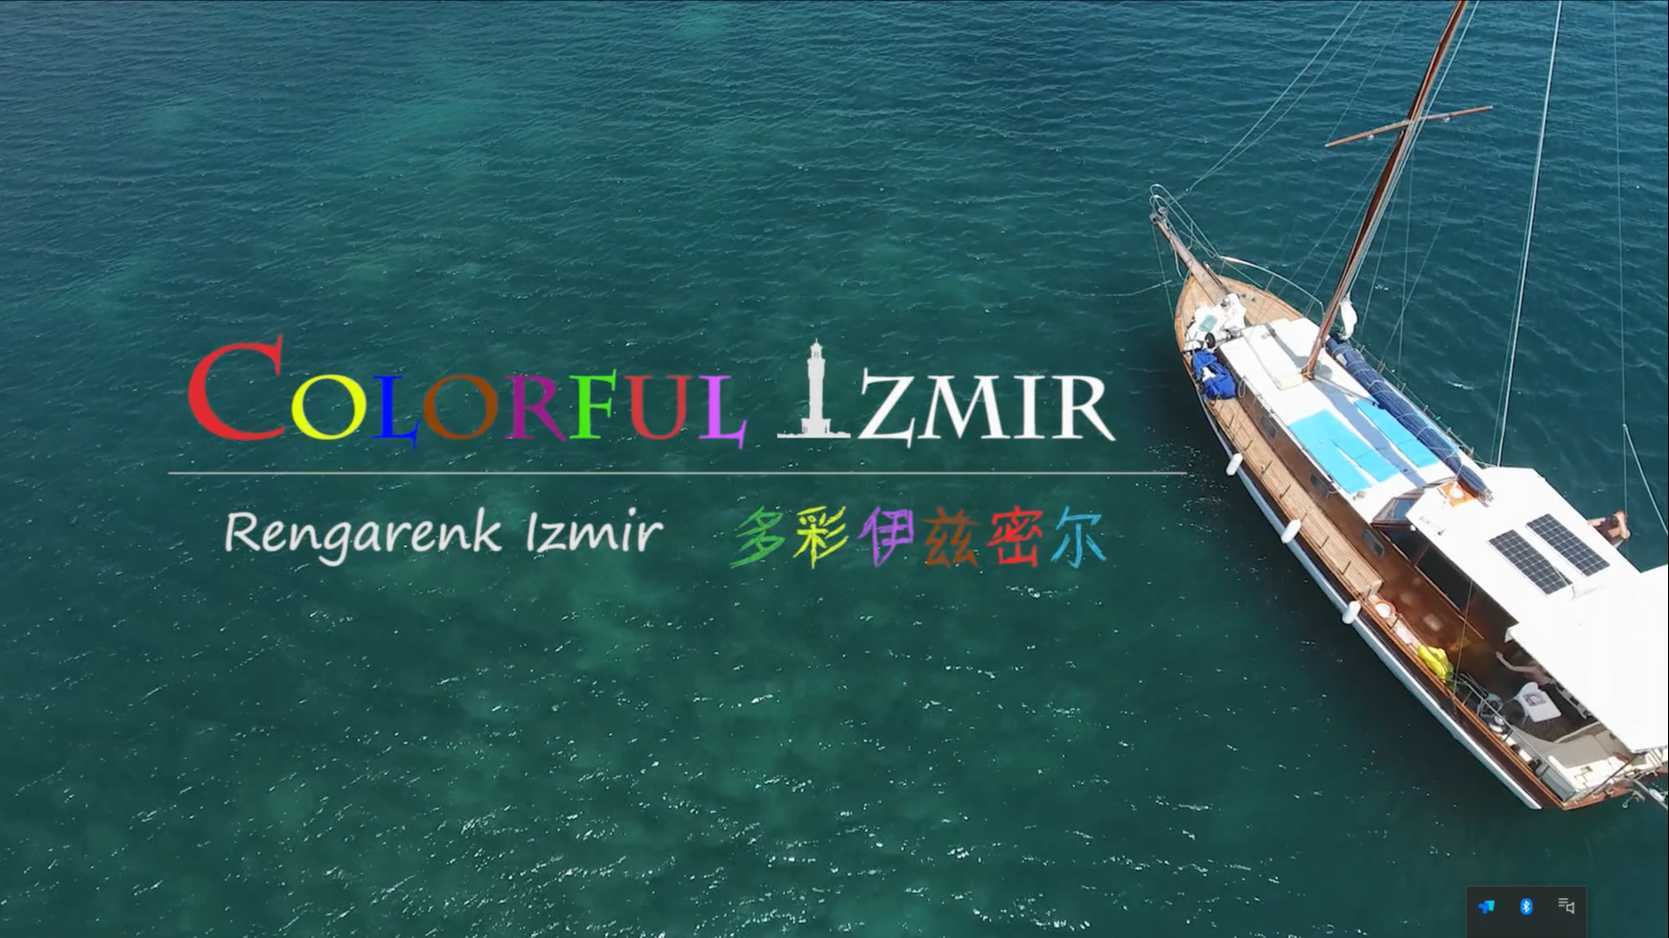 中国导演拍摄的国外城市宣传片《多彩伊兹密尔》